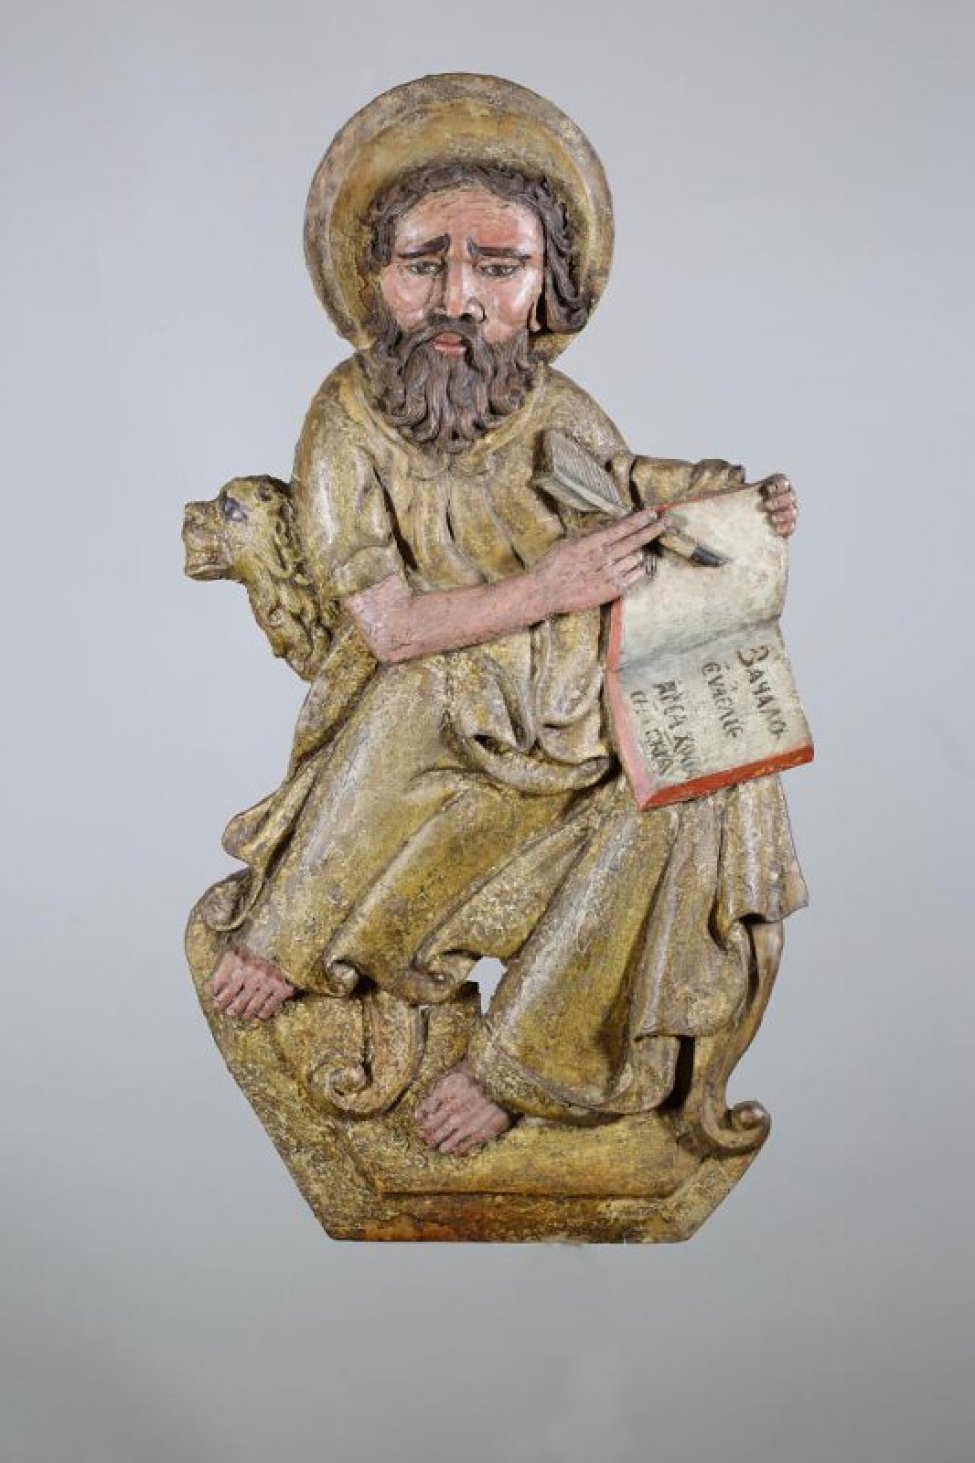 Апостол Марк изображен сидящим на стуле, левой рукой поддерживает книгу с исполненными живописью словом: "Зачало...". В правой руке - перо, из-под локтя этой руки выглядывает голова льва. На голове - нимб.